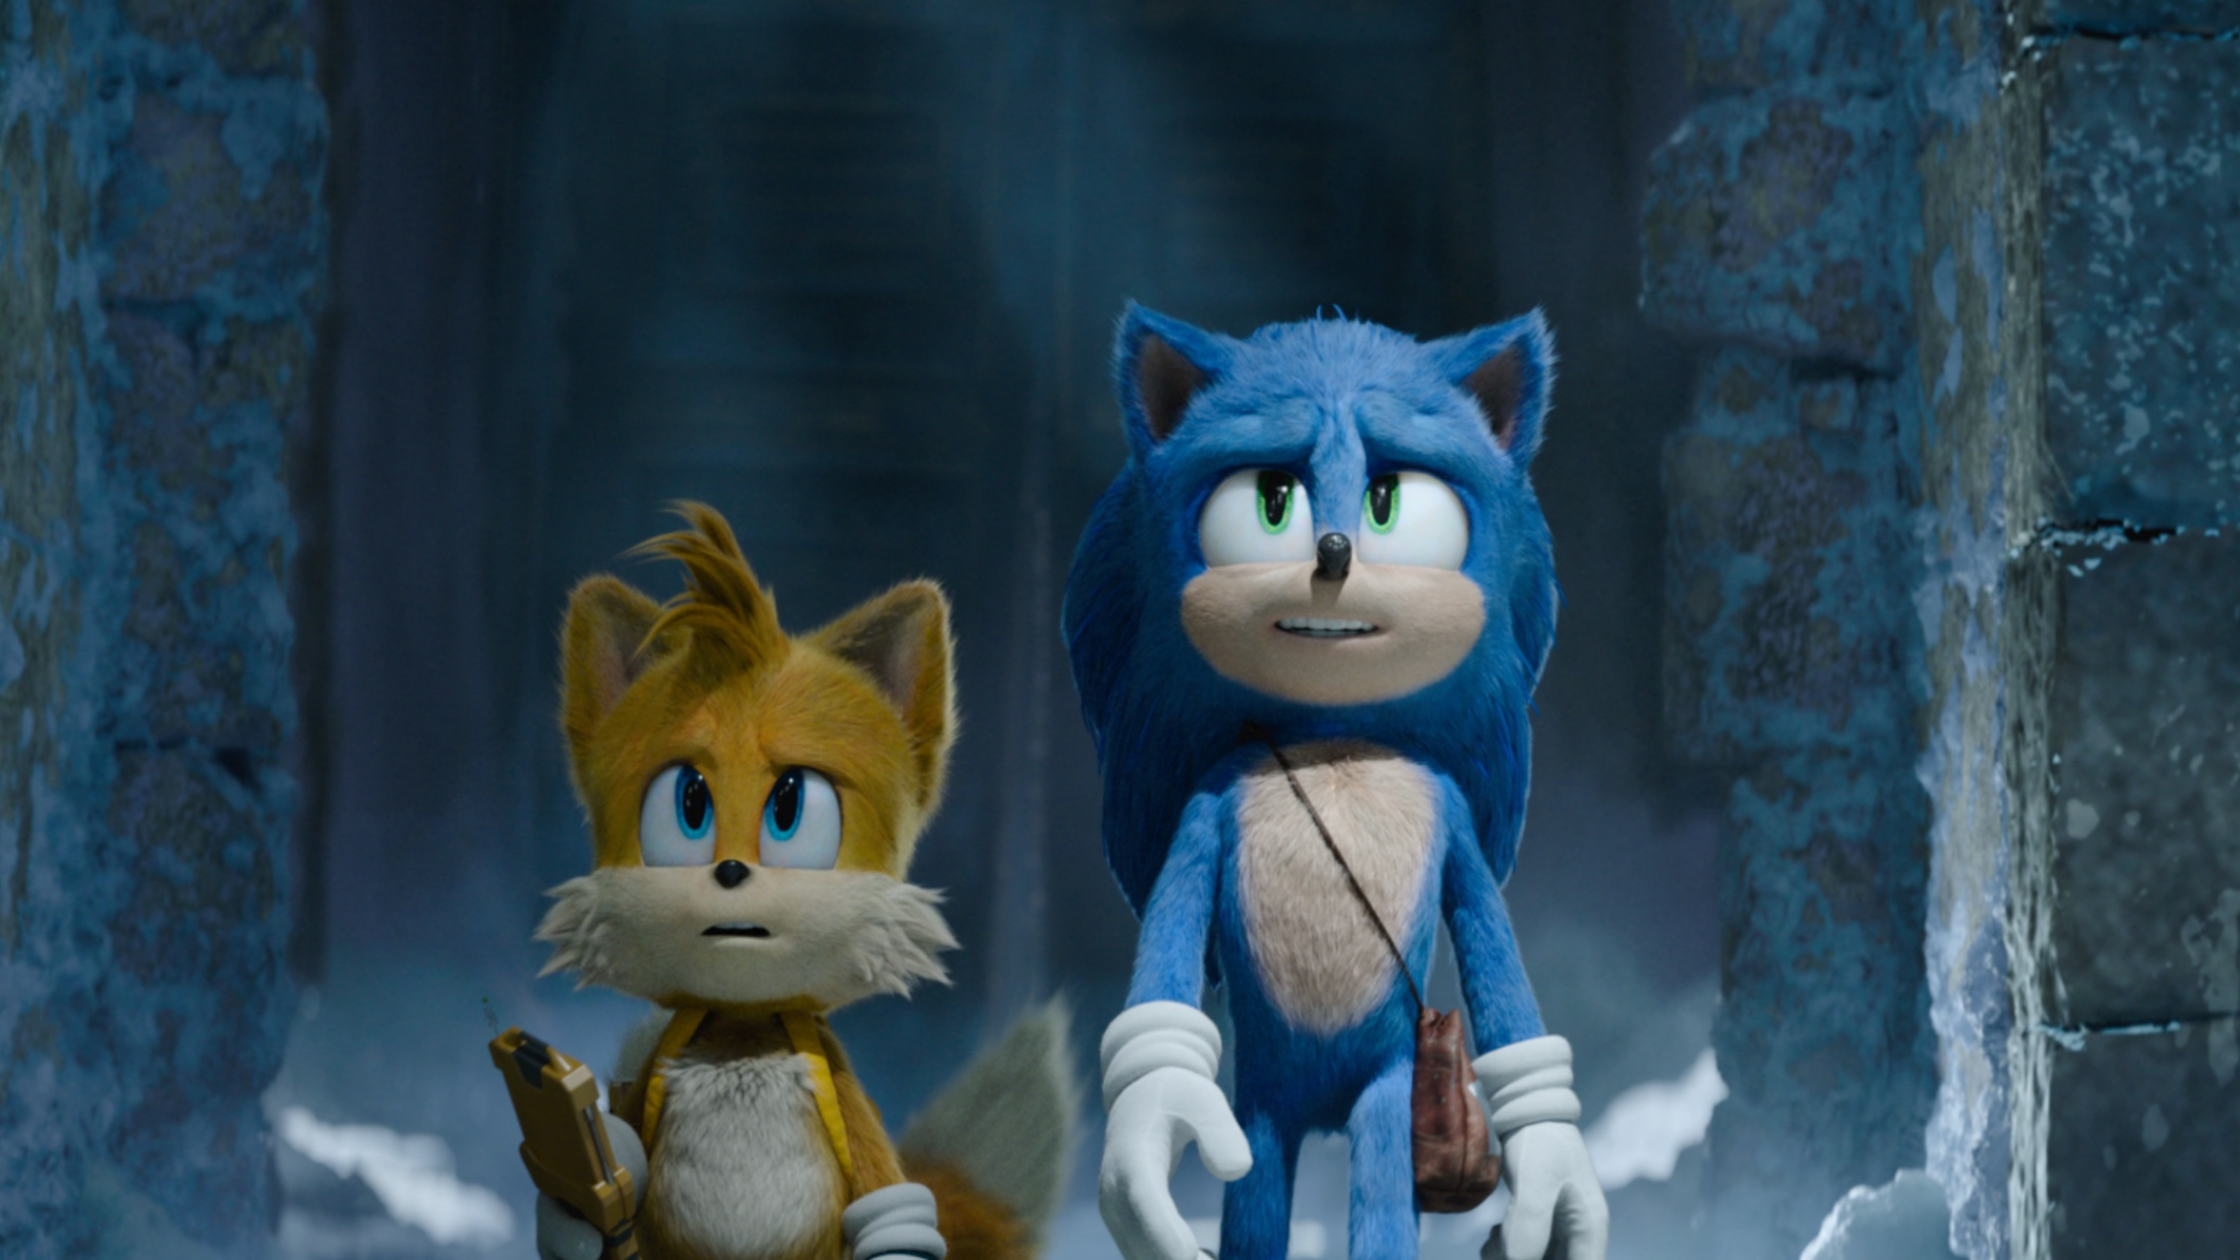 Comerciais de Sonic 2: O Filme destacam Knuckles e Tails